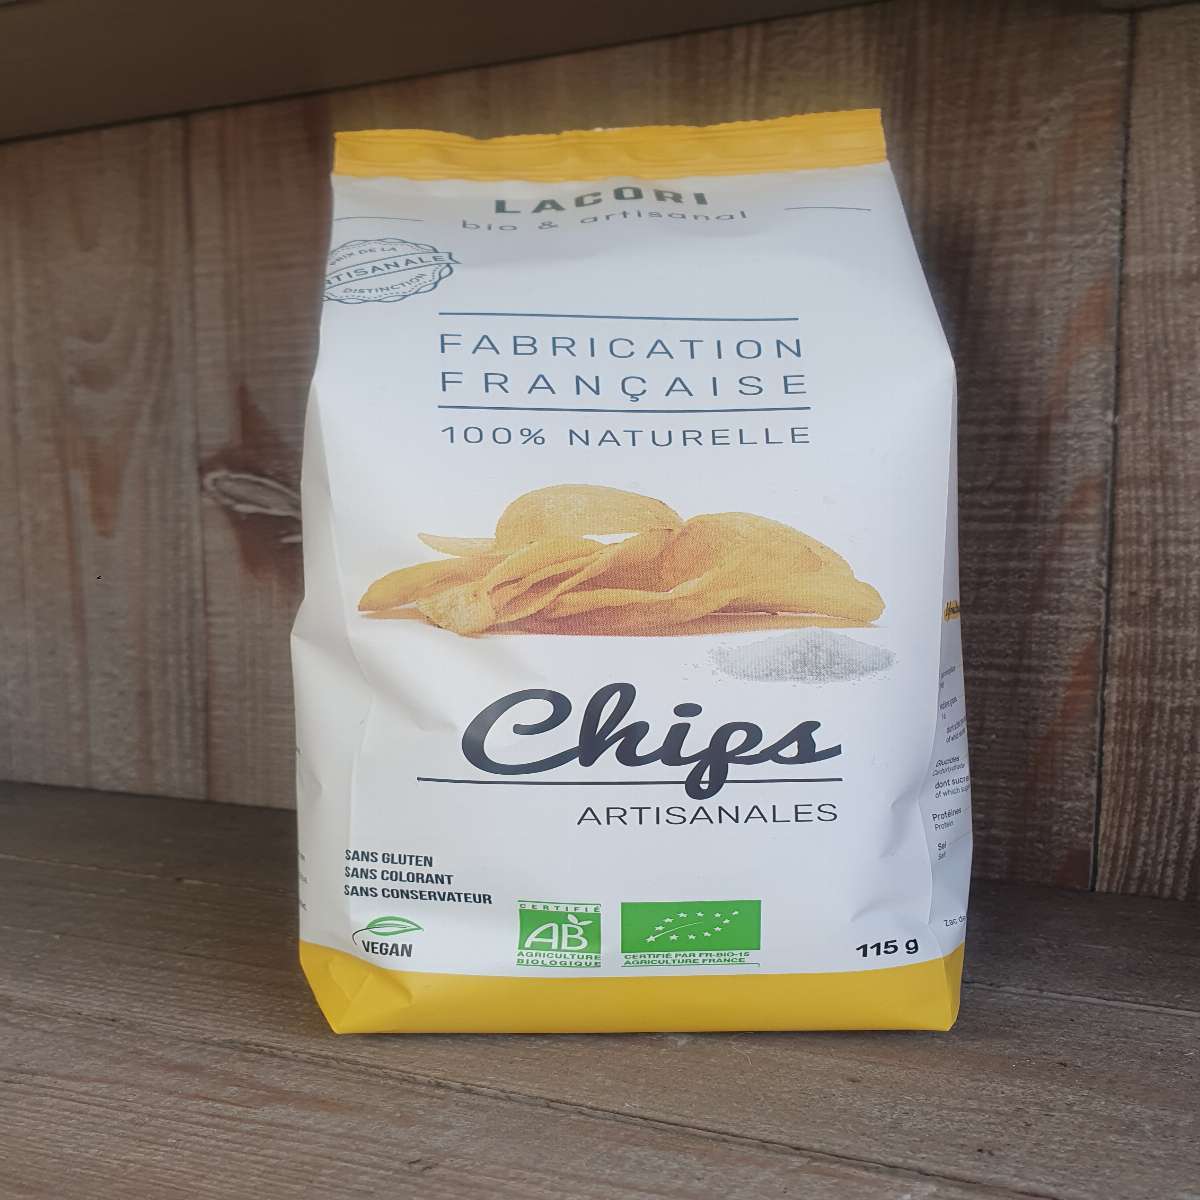 Chips artisanale.